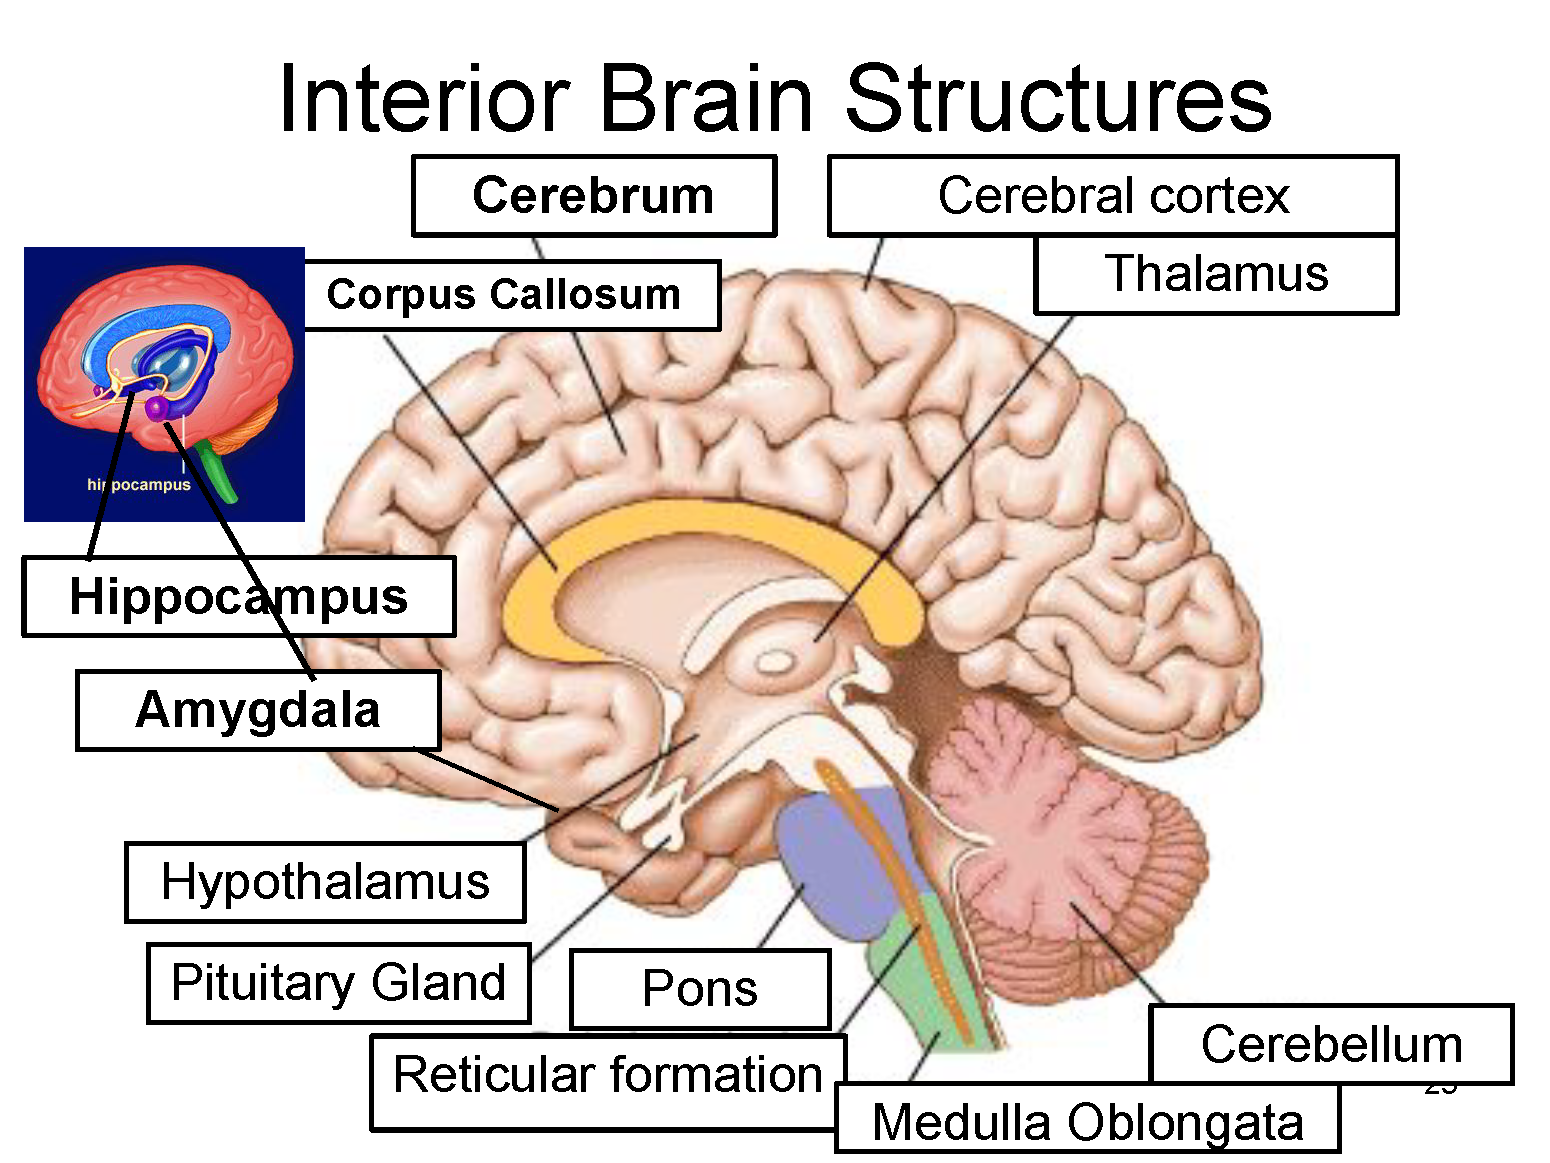 <ul><li><p>largest part of brain</p></li><li><p>handles a wide ranges of responsibilities</p></li><li><p>Includes</p><ul><li><p>Frontal lobe</p></li><li><p>Occipital lobe</p></li><li><p>Temporal lobe</p></li><li><p>Parietal lobe</p></li></ul></li></ul>